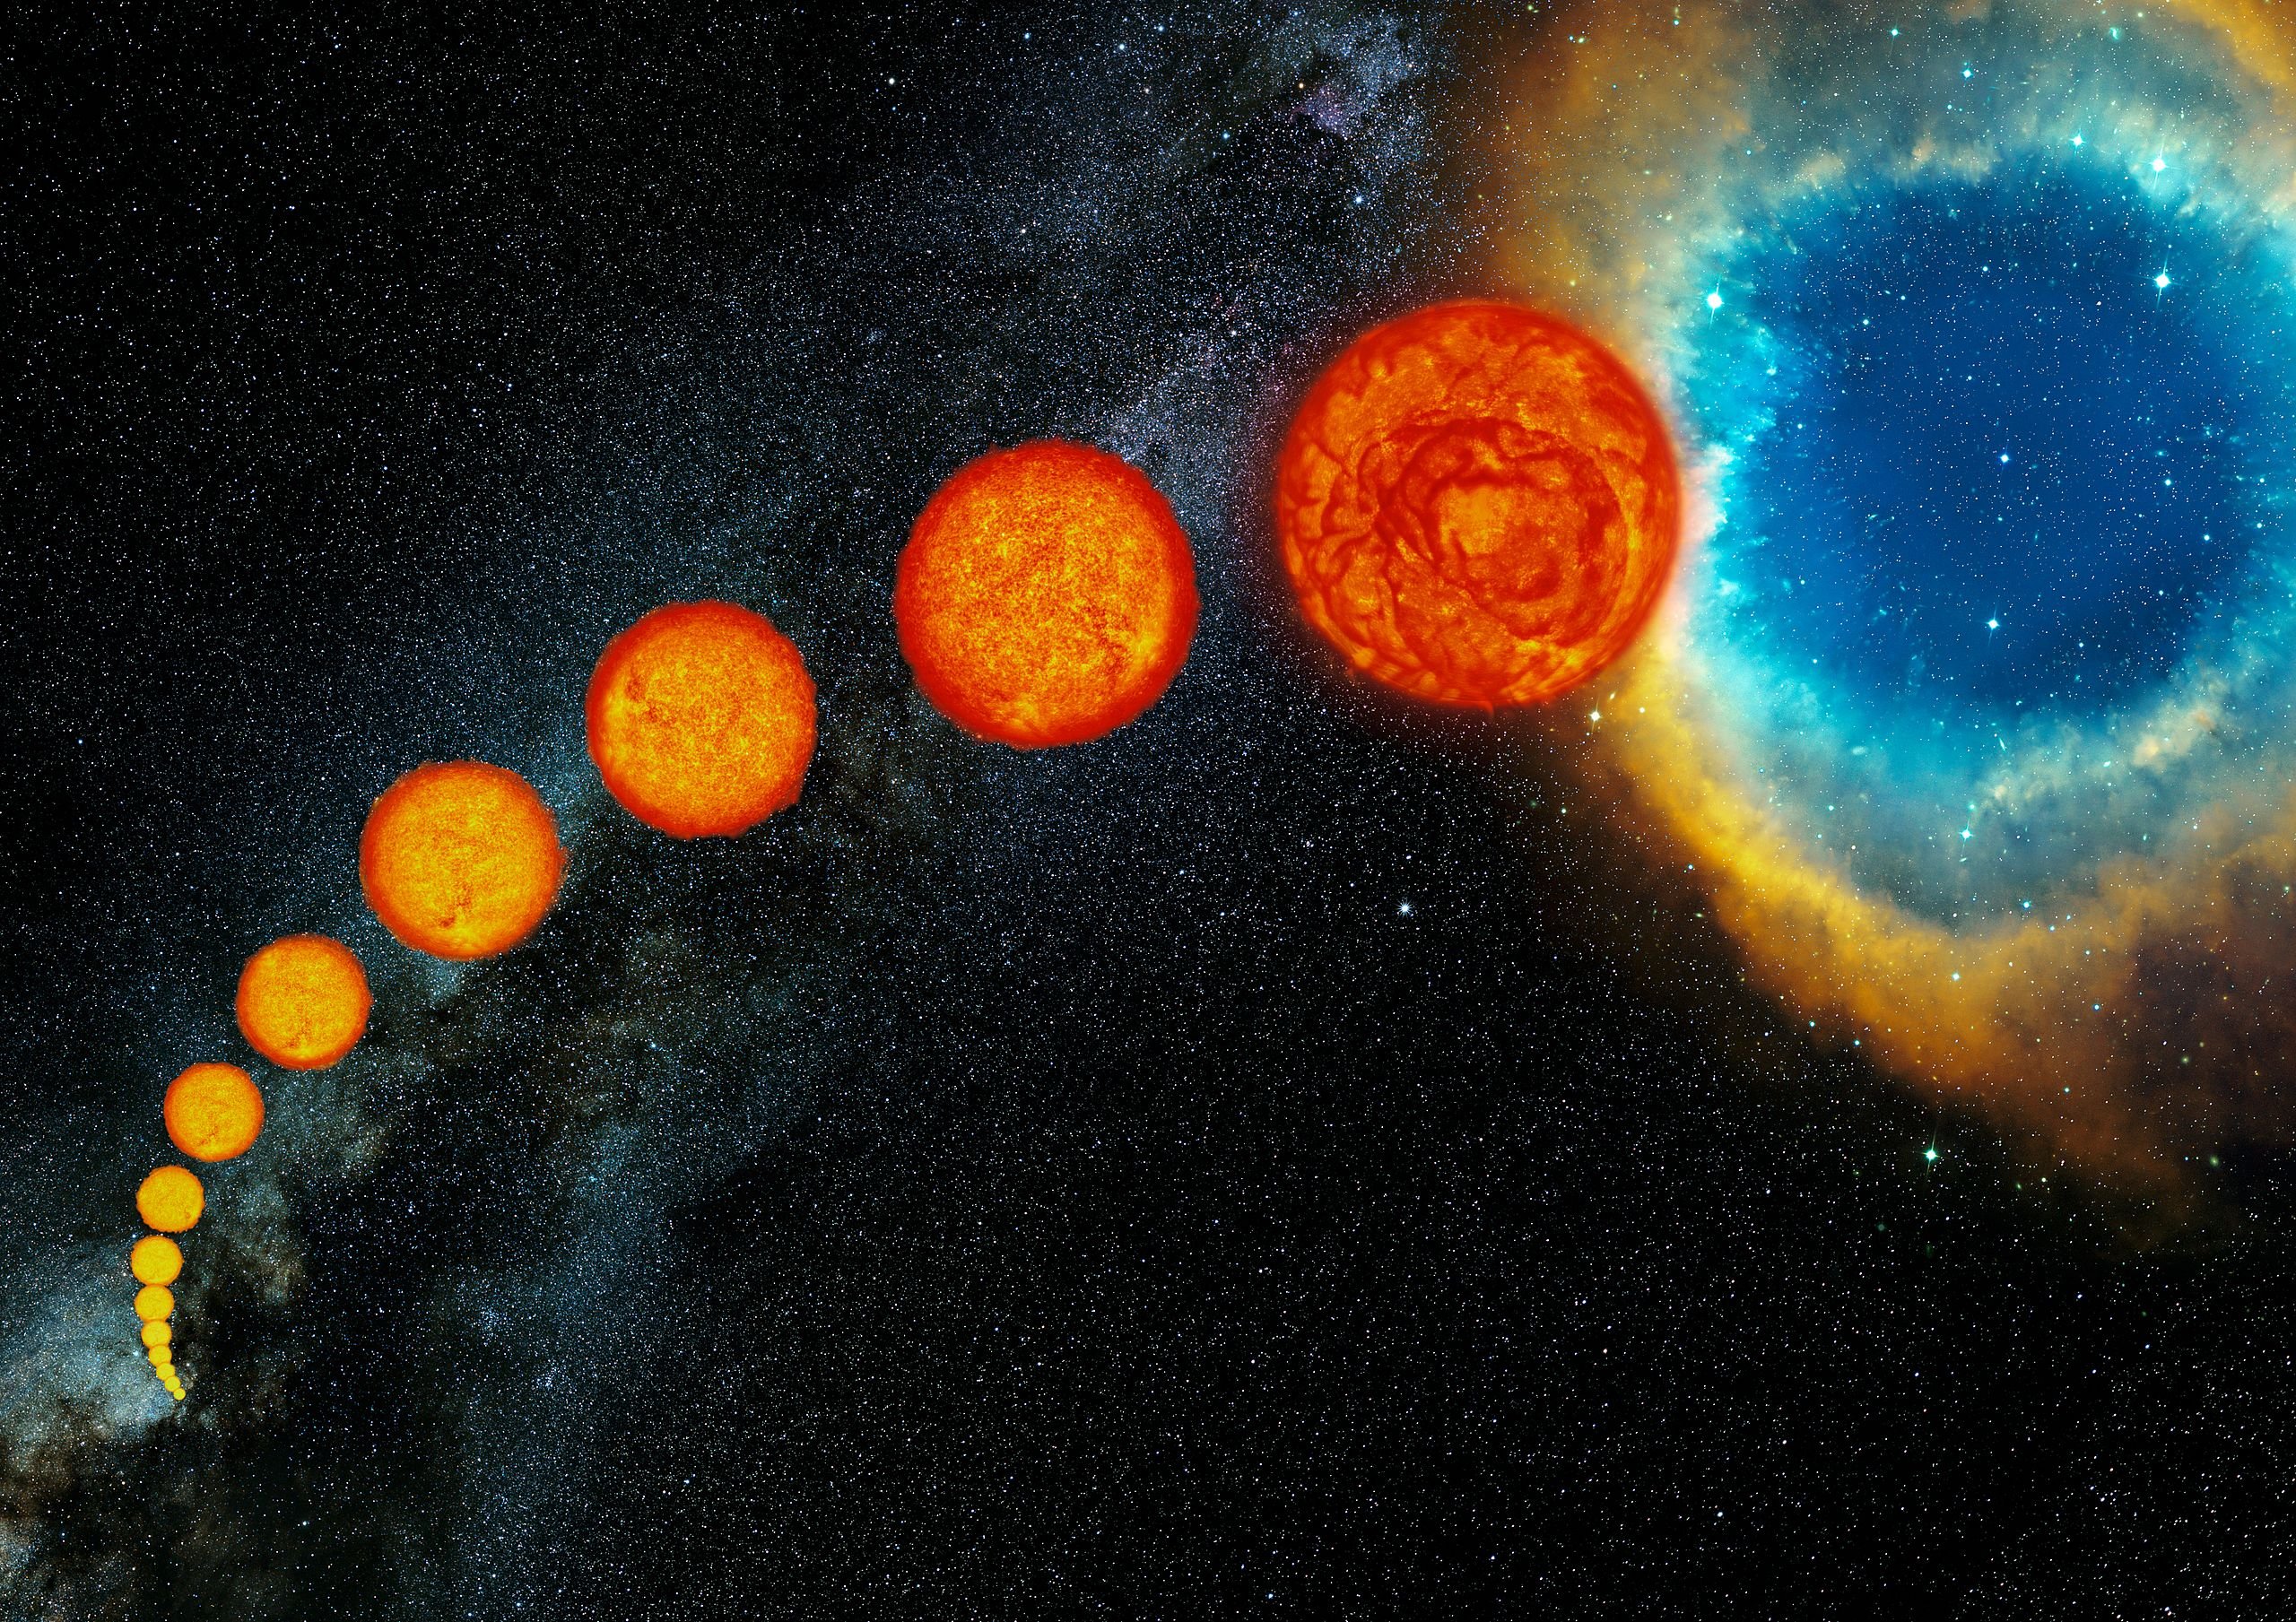 Concepção artística da evolução de uma estrela como o Sol. Começando da parte inferior esquerda, a estrela passa pela Sequência Principal (etapa que o Sol se encontra), e passa pelas fases de subgigante e gigante até atingir a fase de Nebulosa Planetária, última representada.